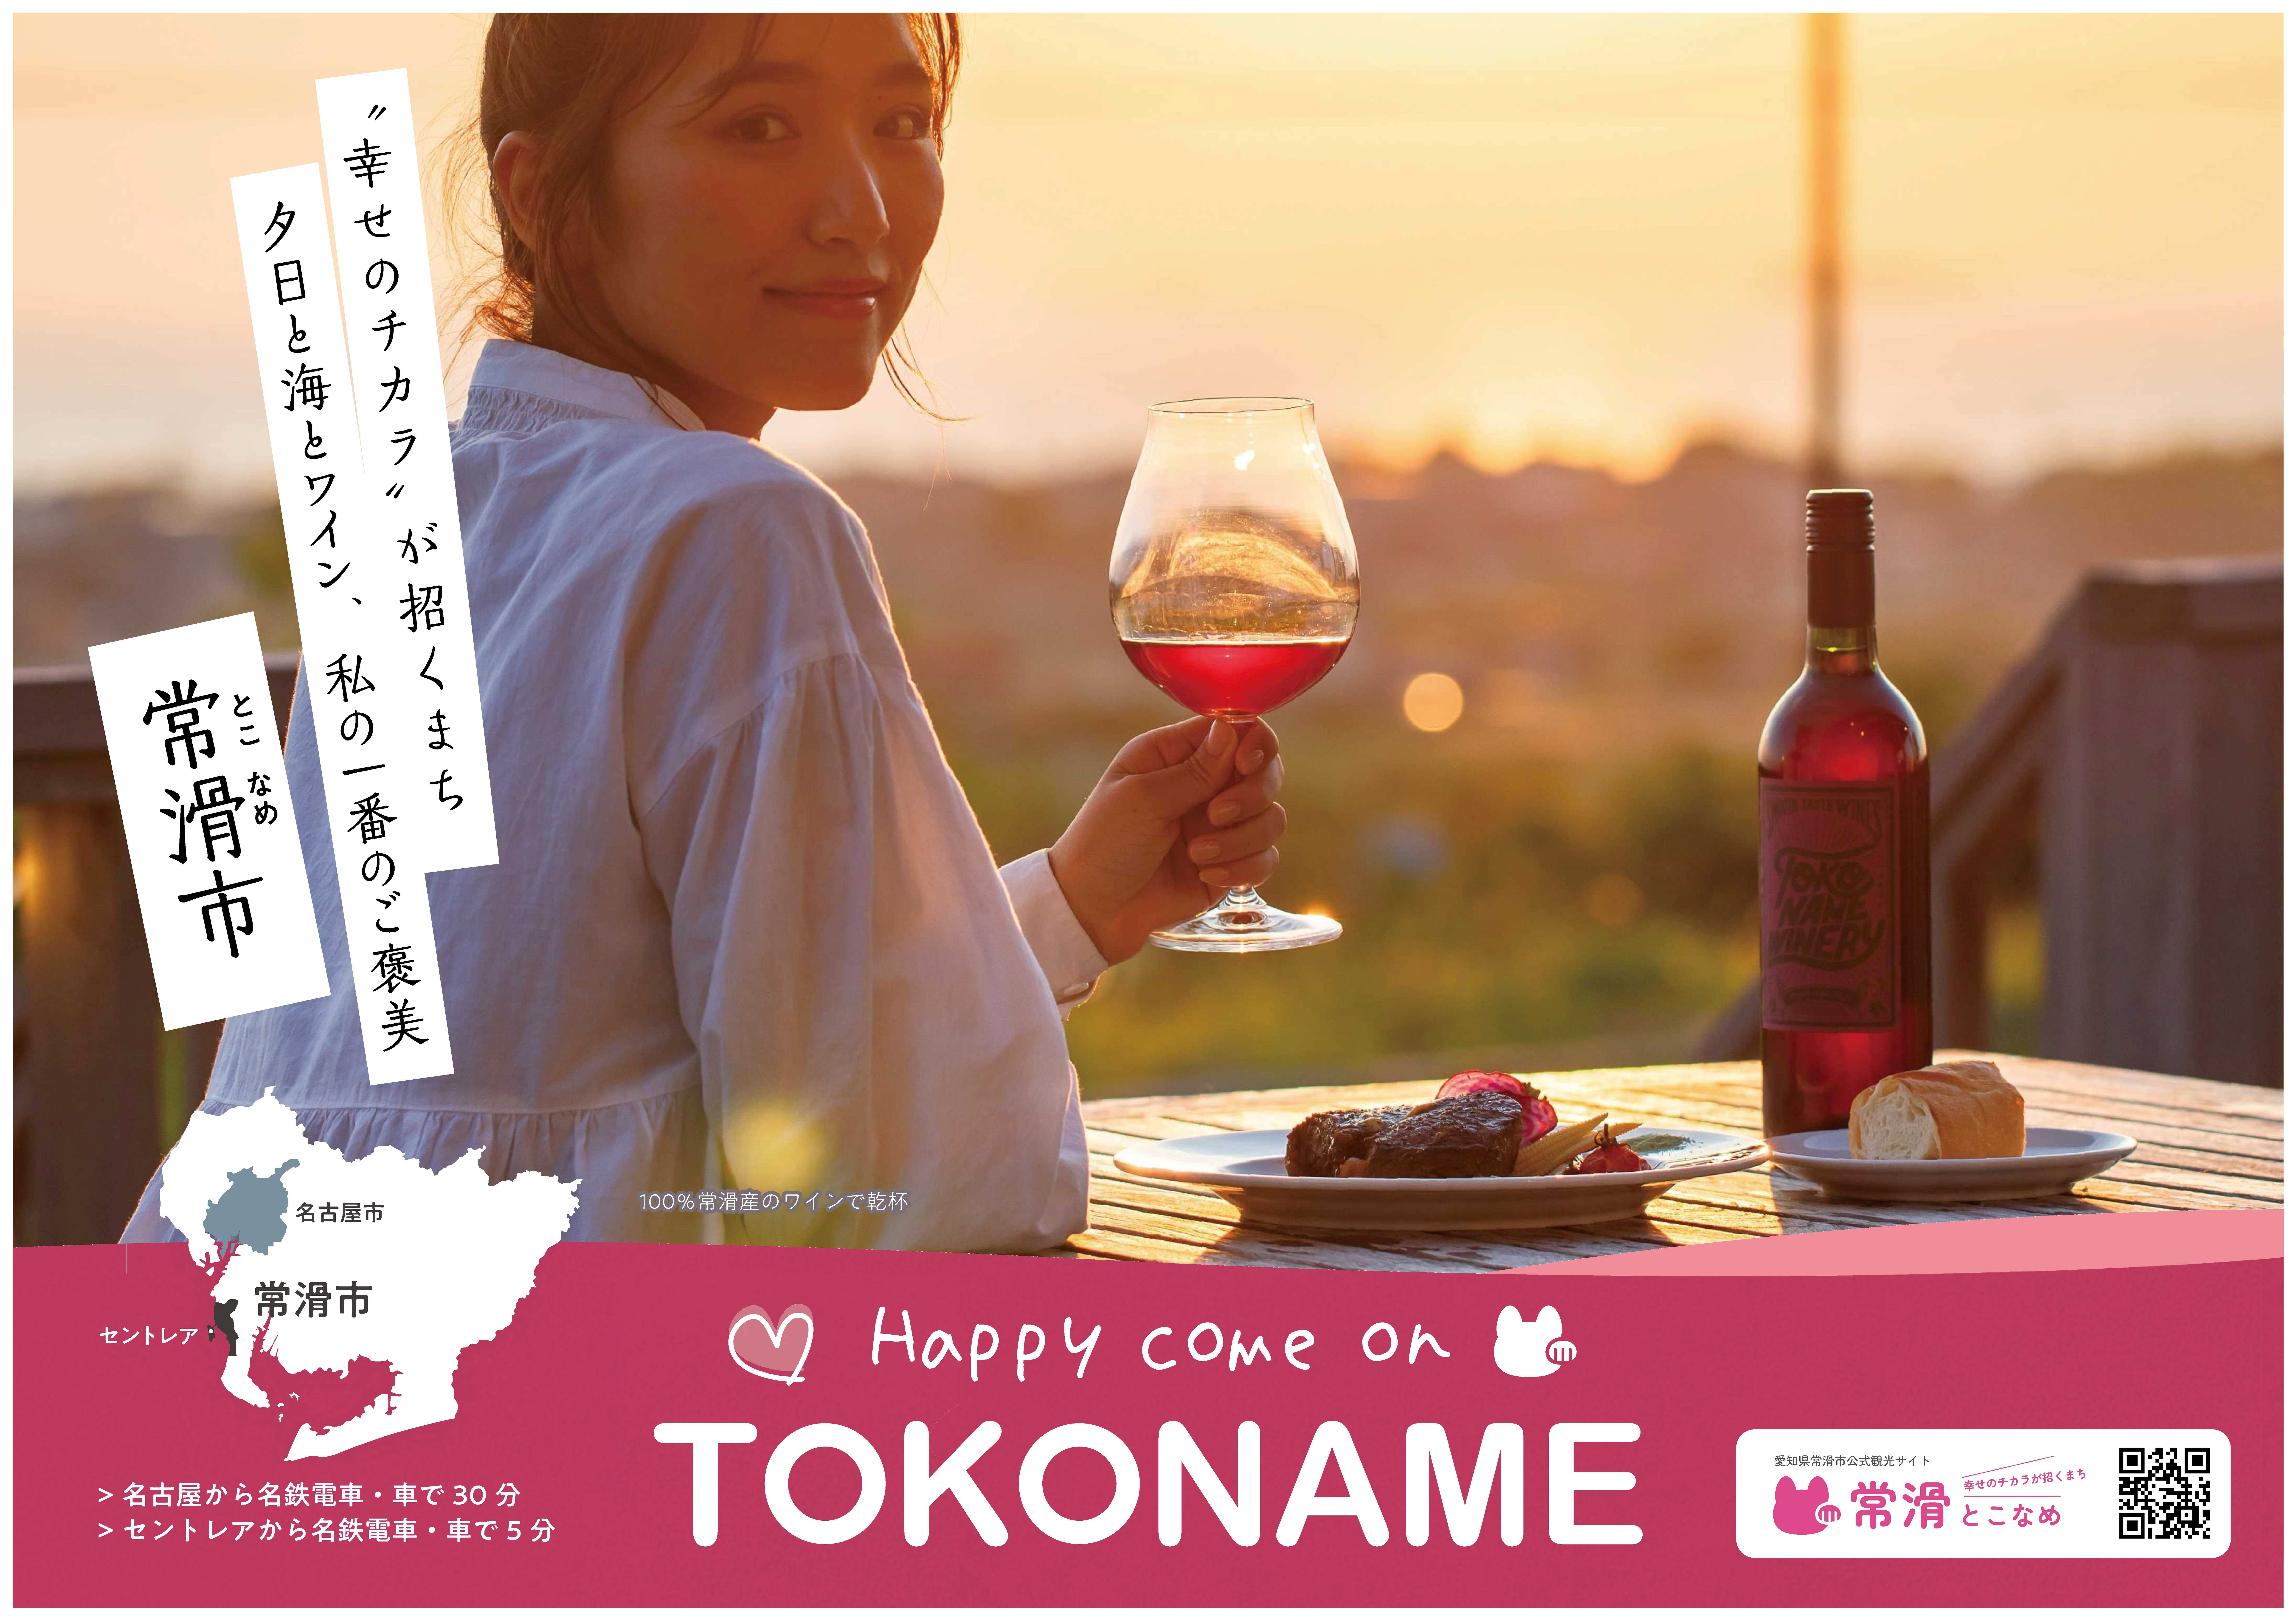 とこなめ観光ナビで「Happy Come On TOKONAME」をキーワードに常滑市の魅力発信中♪